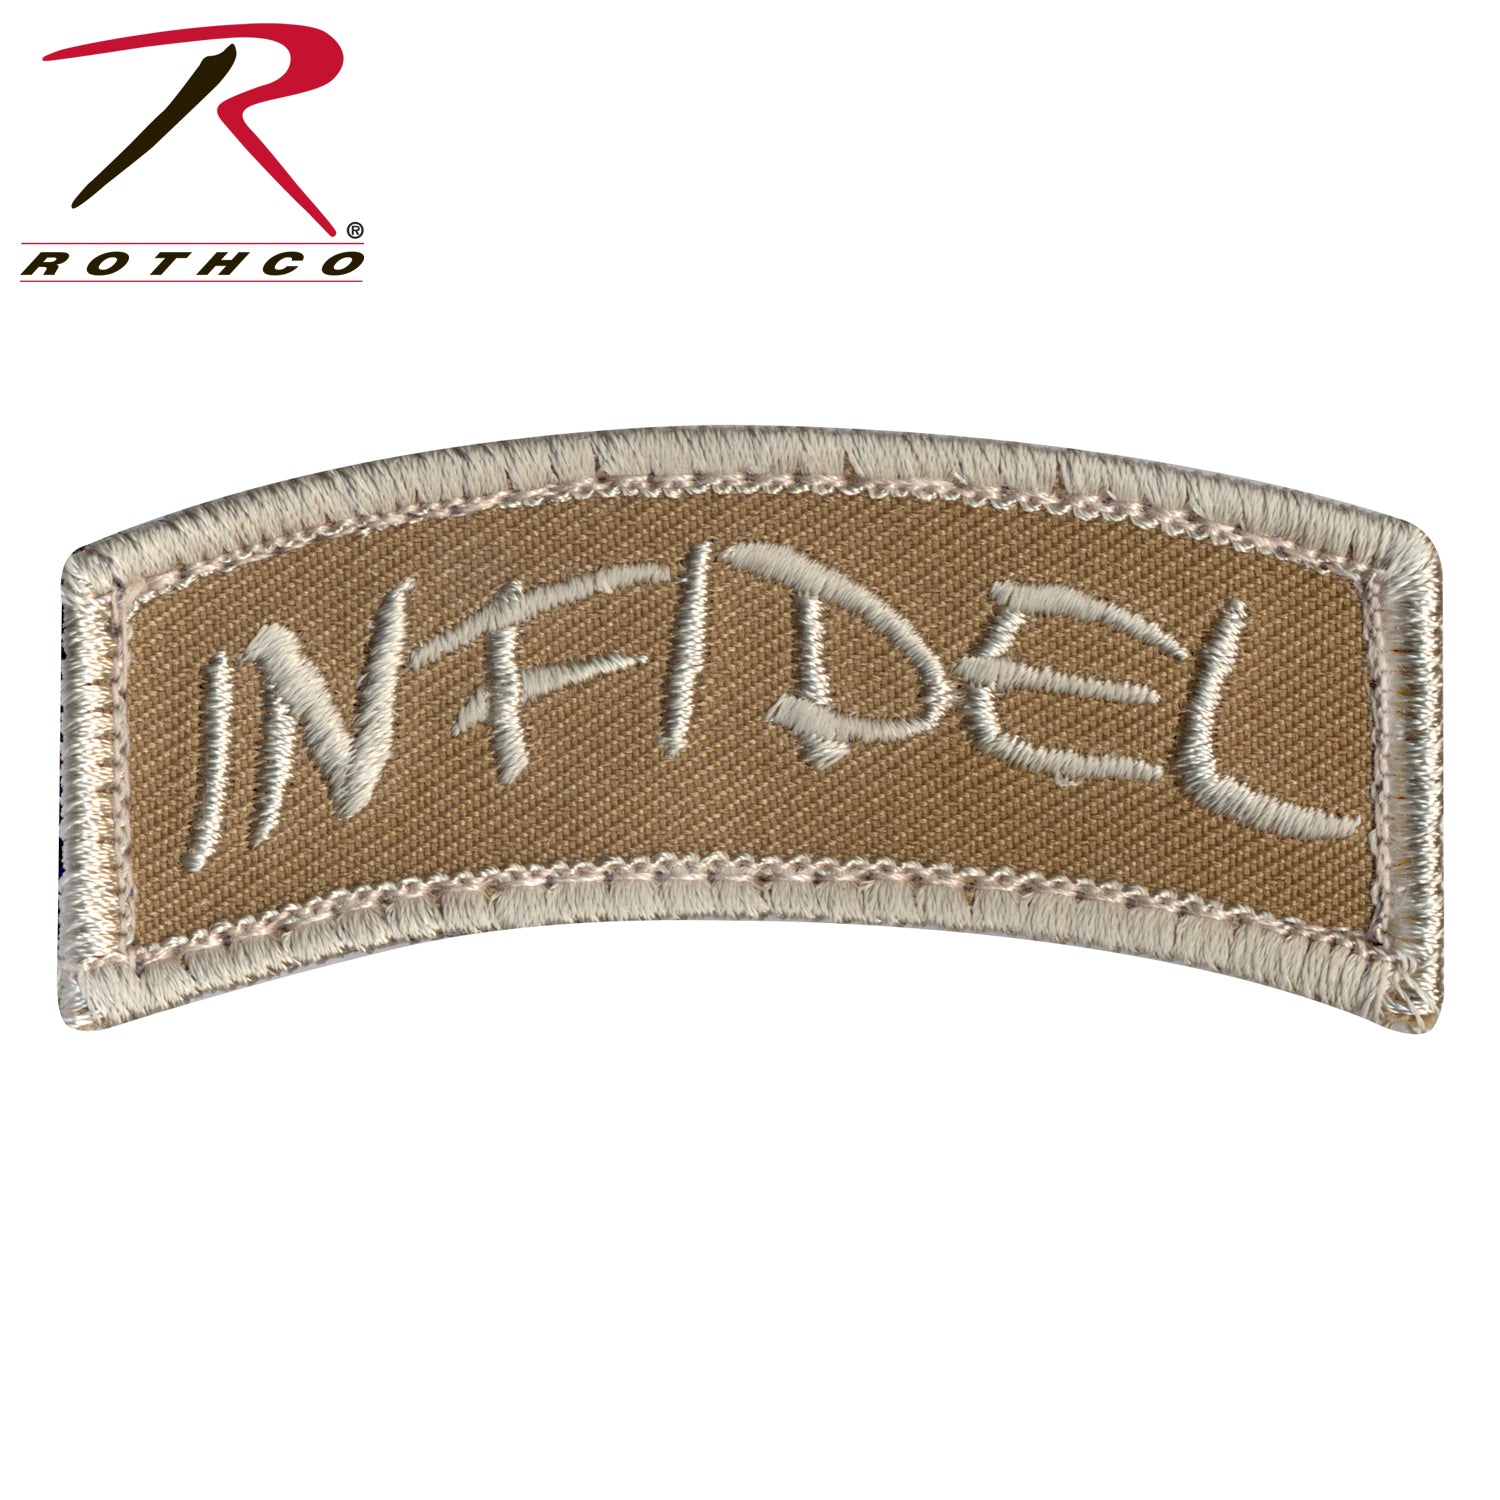 Infidel Shoulder Morale Patch